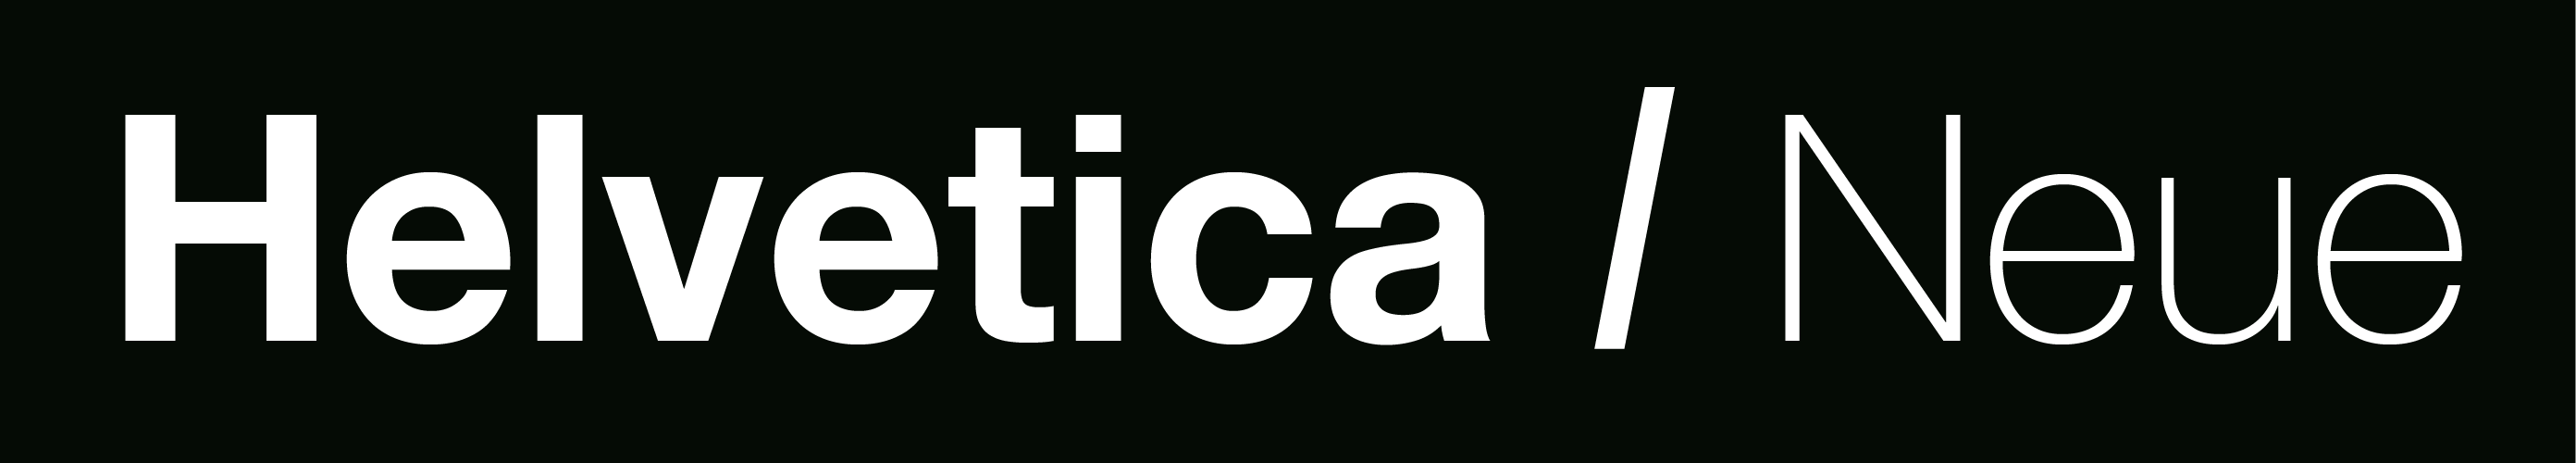 Helvetica Neue fonts download